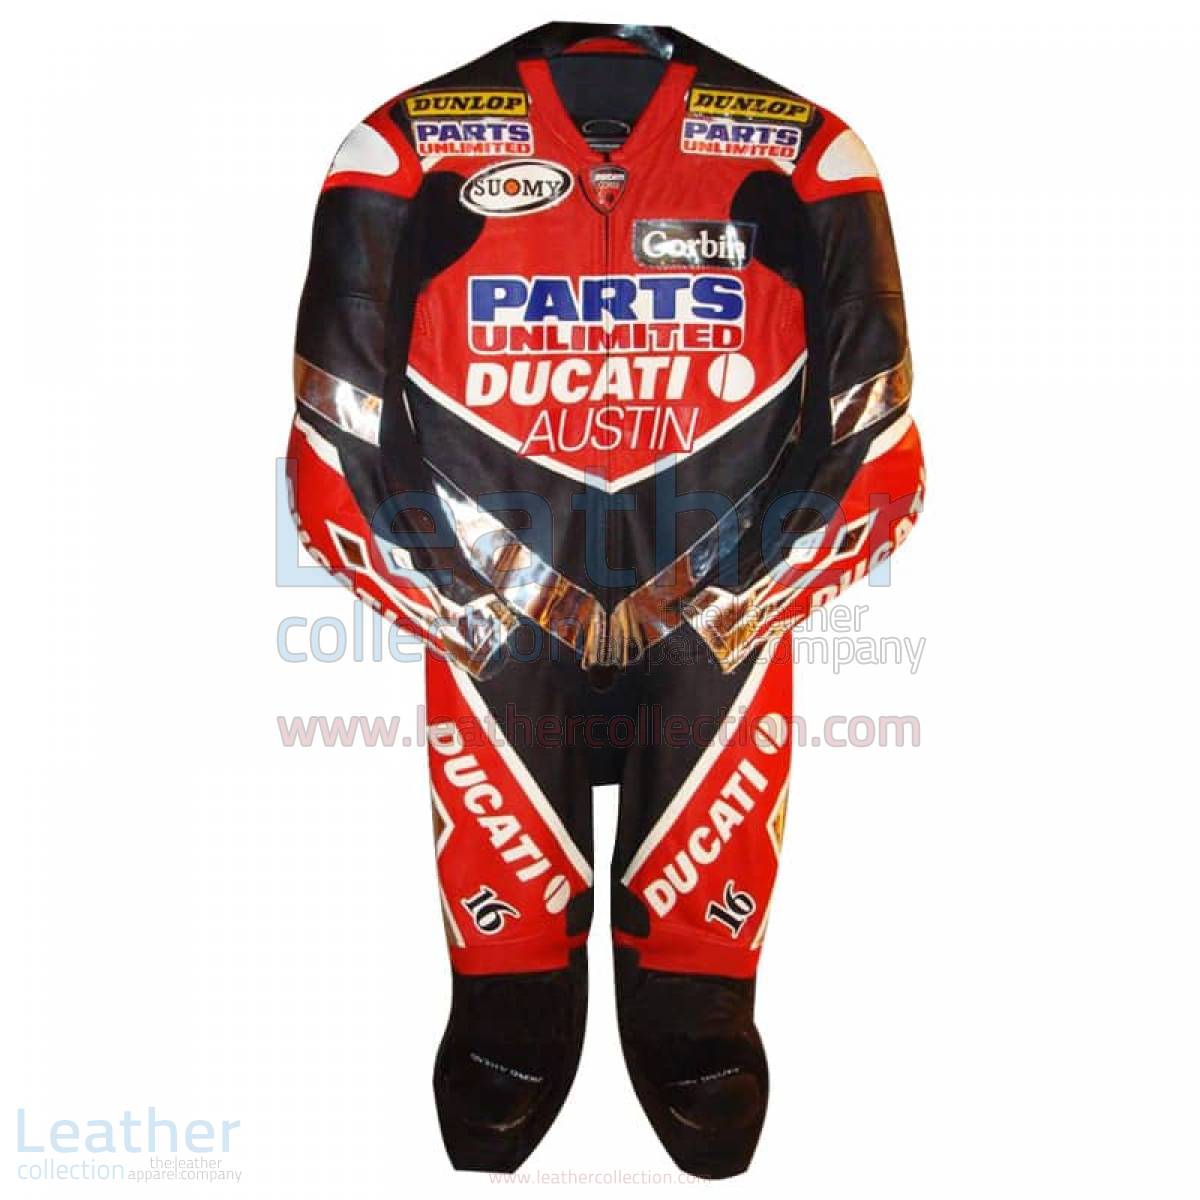 Anthony Gobert Austin Ducati 2003 AMA Race Suit – Ducati Suit